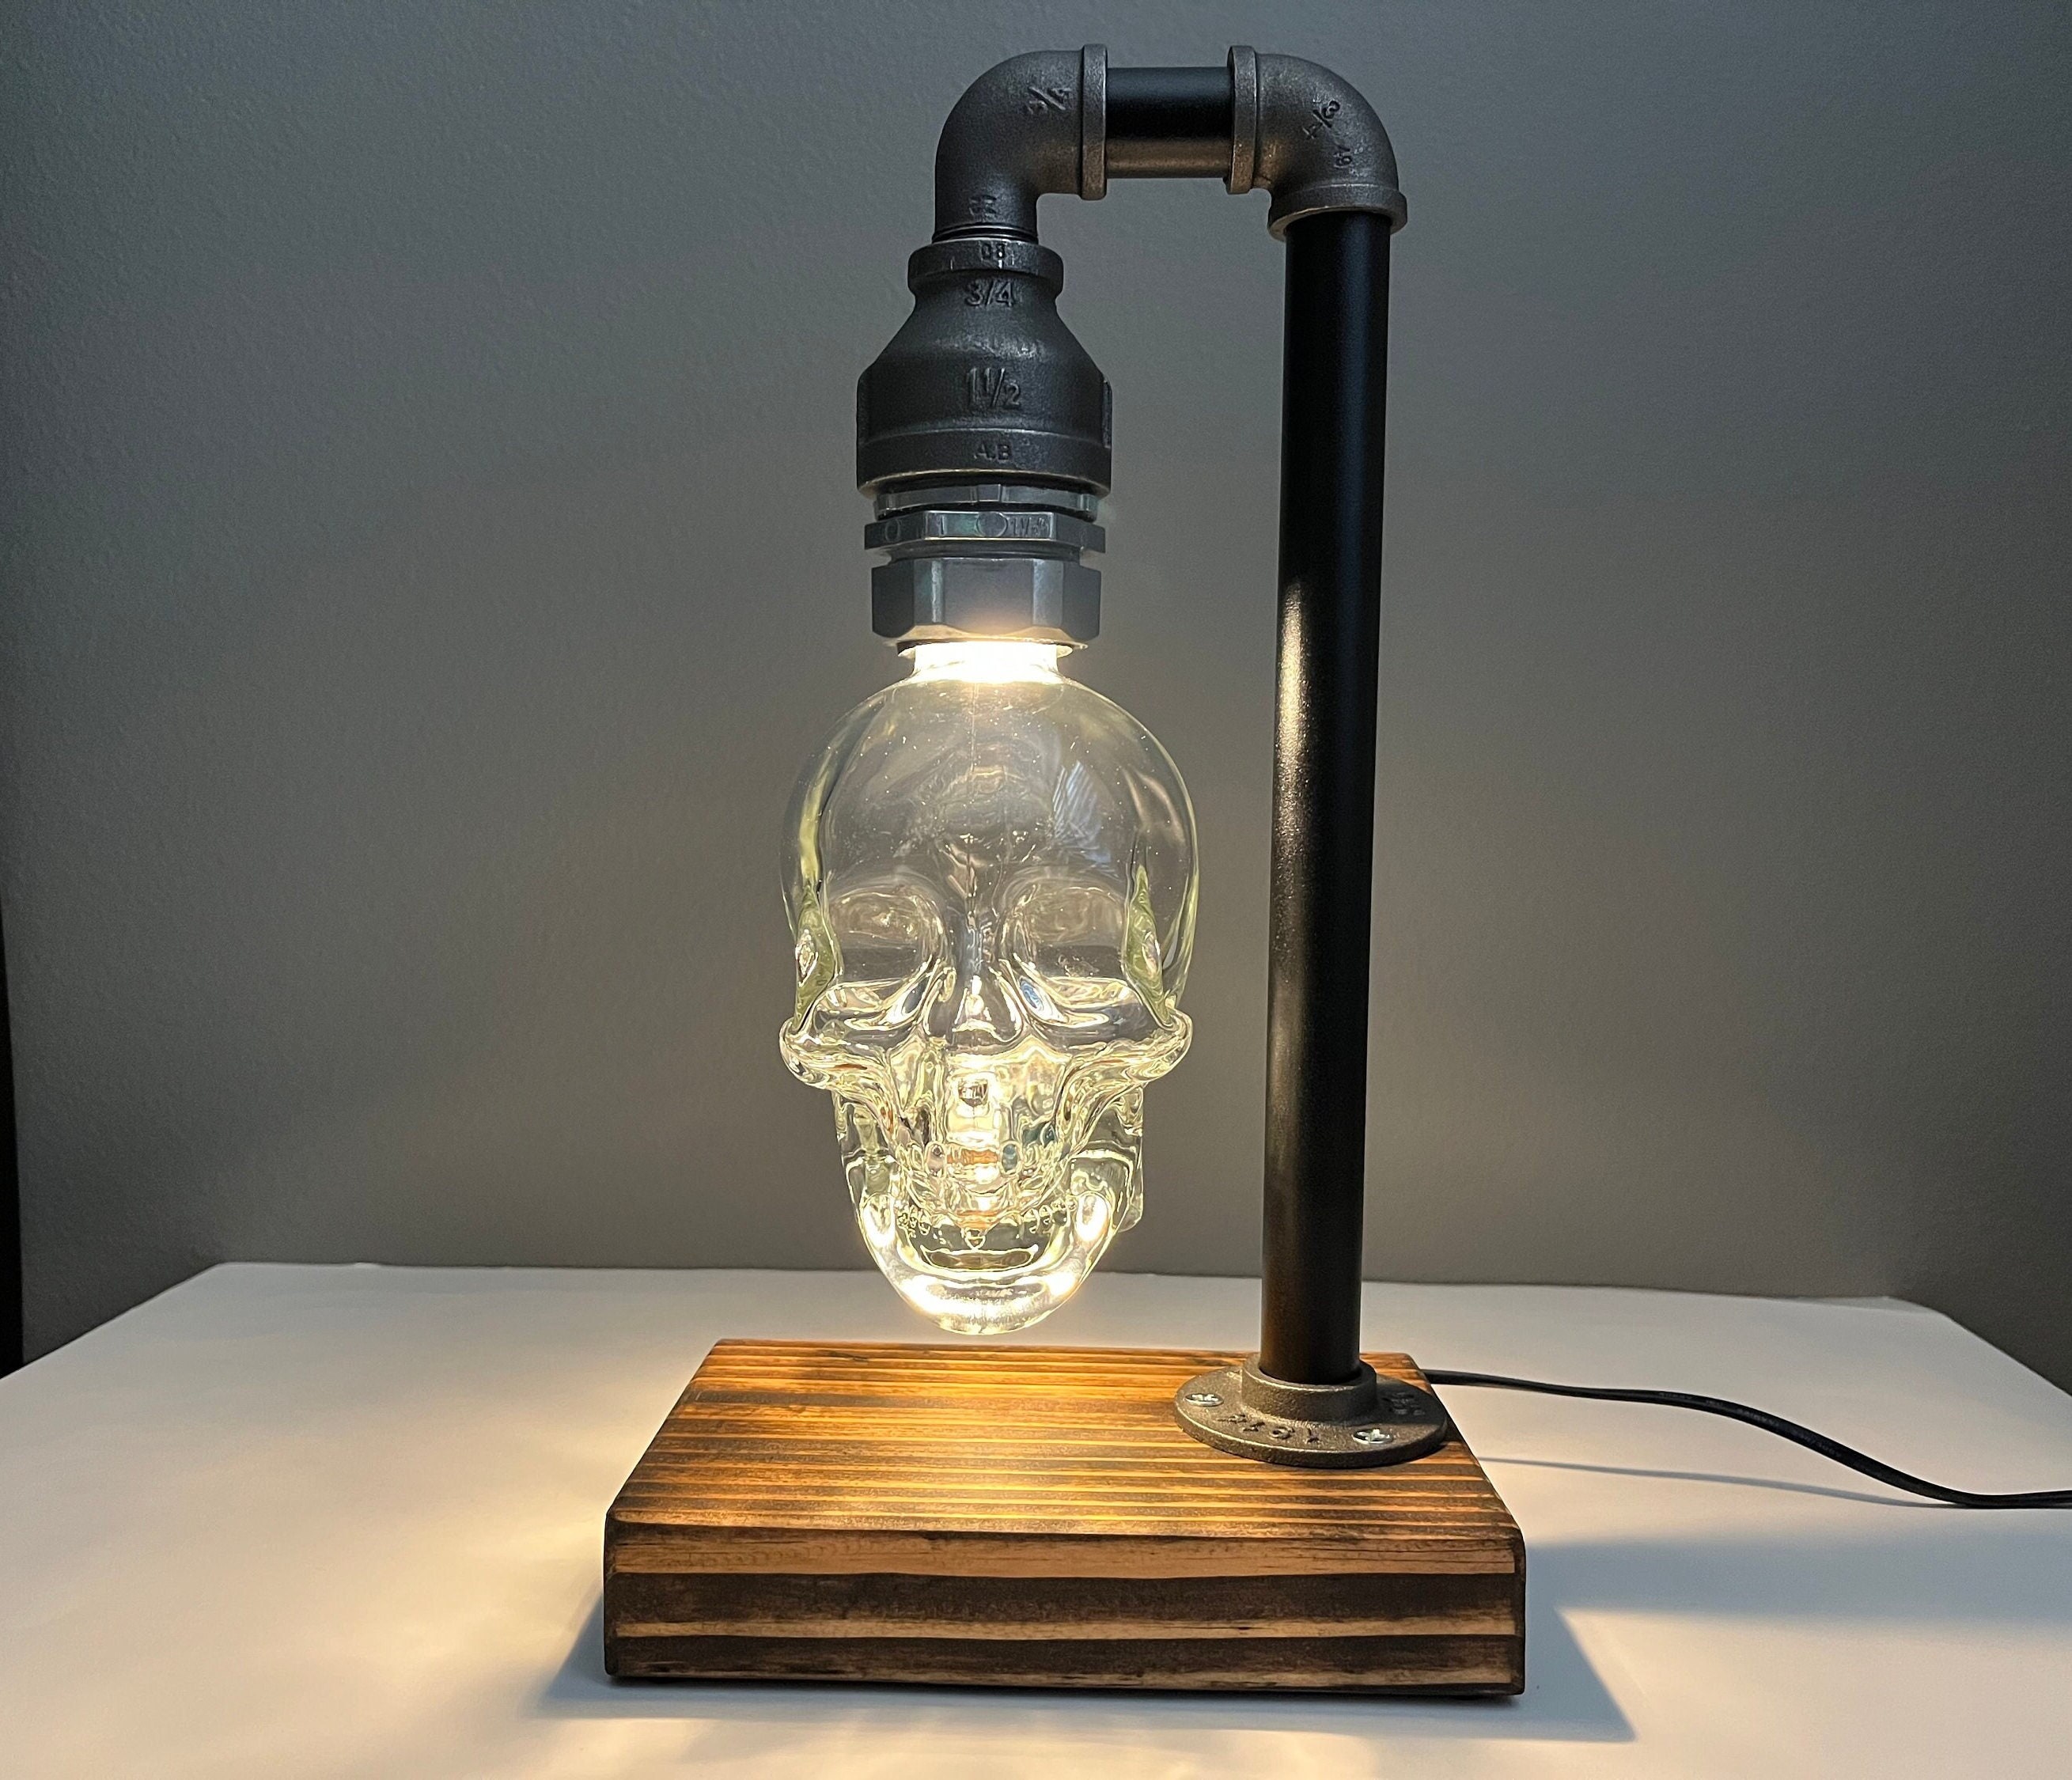 Professor biografi Vil Crystal Head Vodka Lamp Skull Lamp Skull Decor Skull Light - Etsy